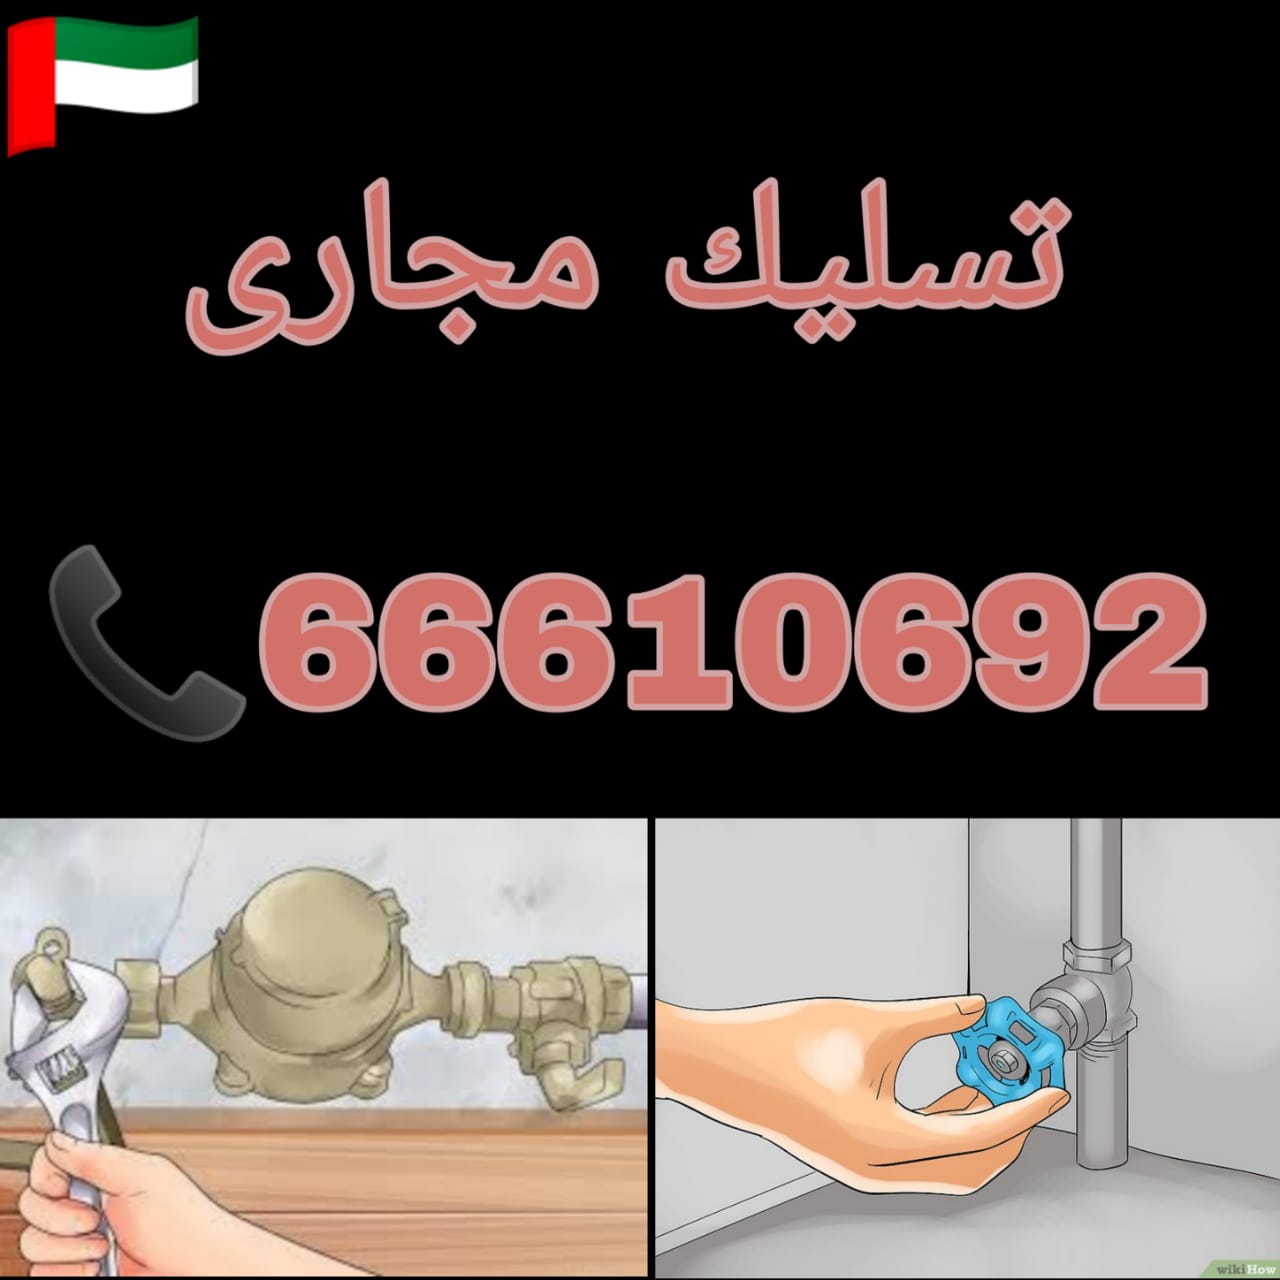 شركة تسليك مجاري الكويت /66610692 / رقم خدمة تسليك مجاري بالكويت